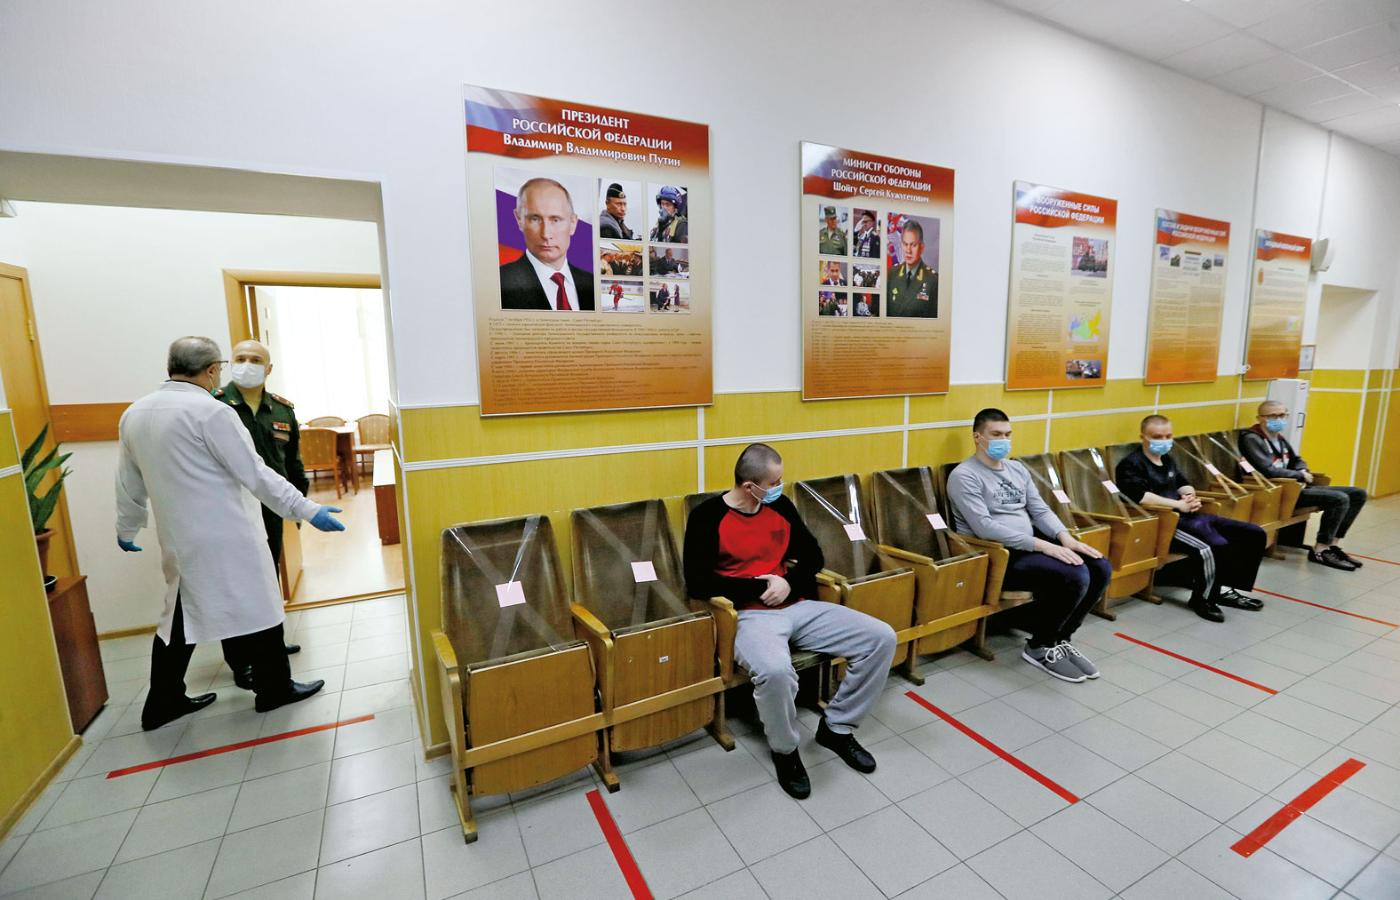 Służba wojskowa w Rosji jest obowiązkiem wszystkich mężczyzn. Na fot.: rekruci czekający na badania lekarskie.